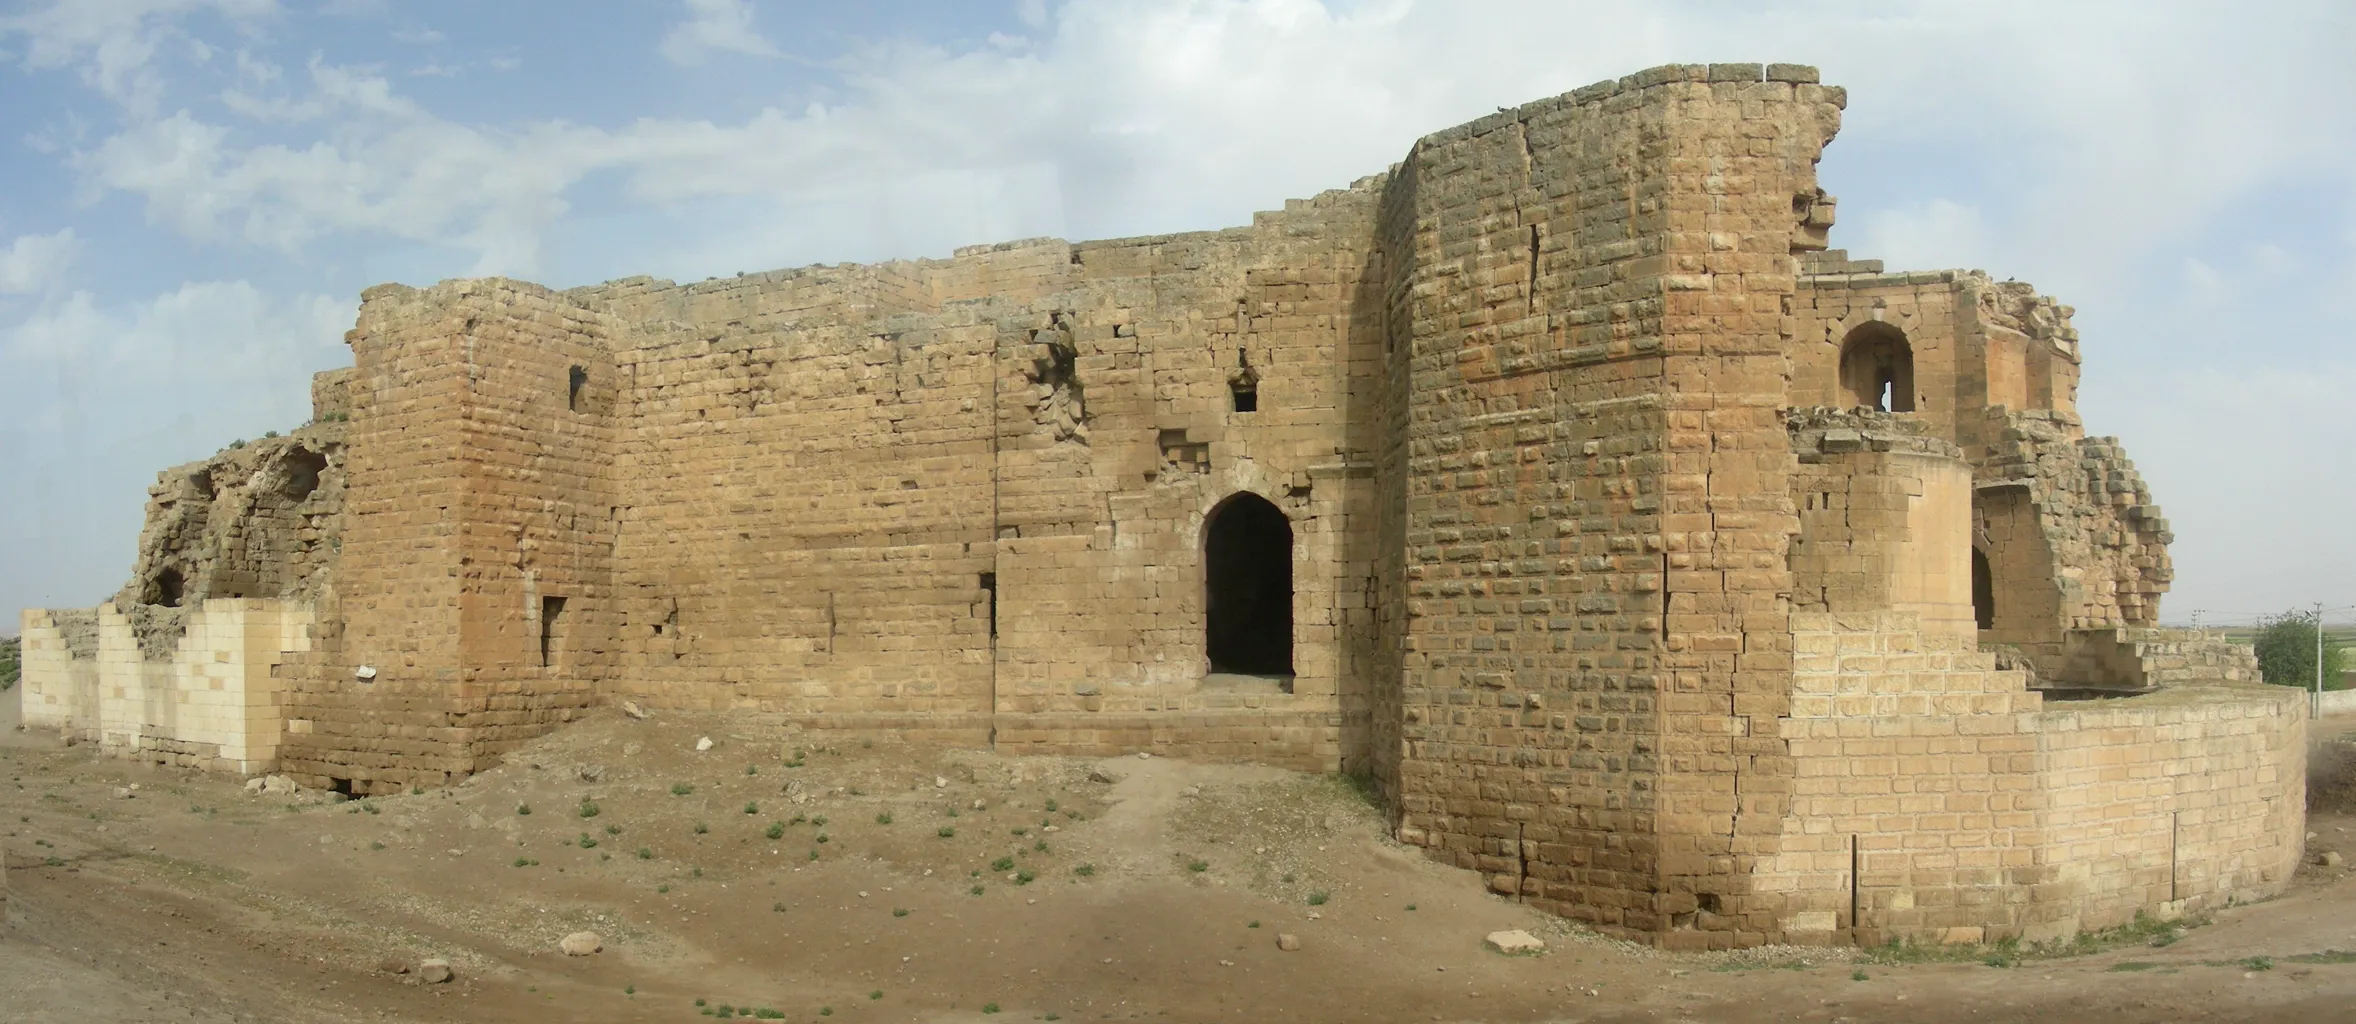 Harran Ancient City 2